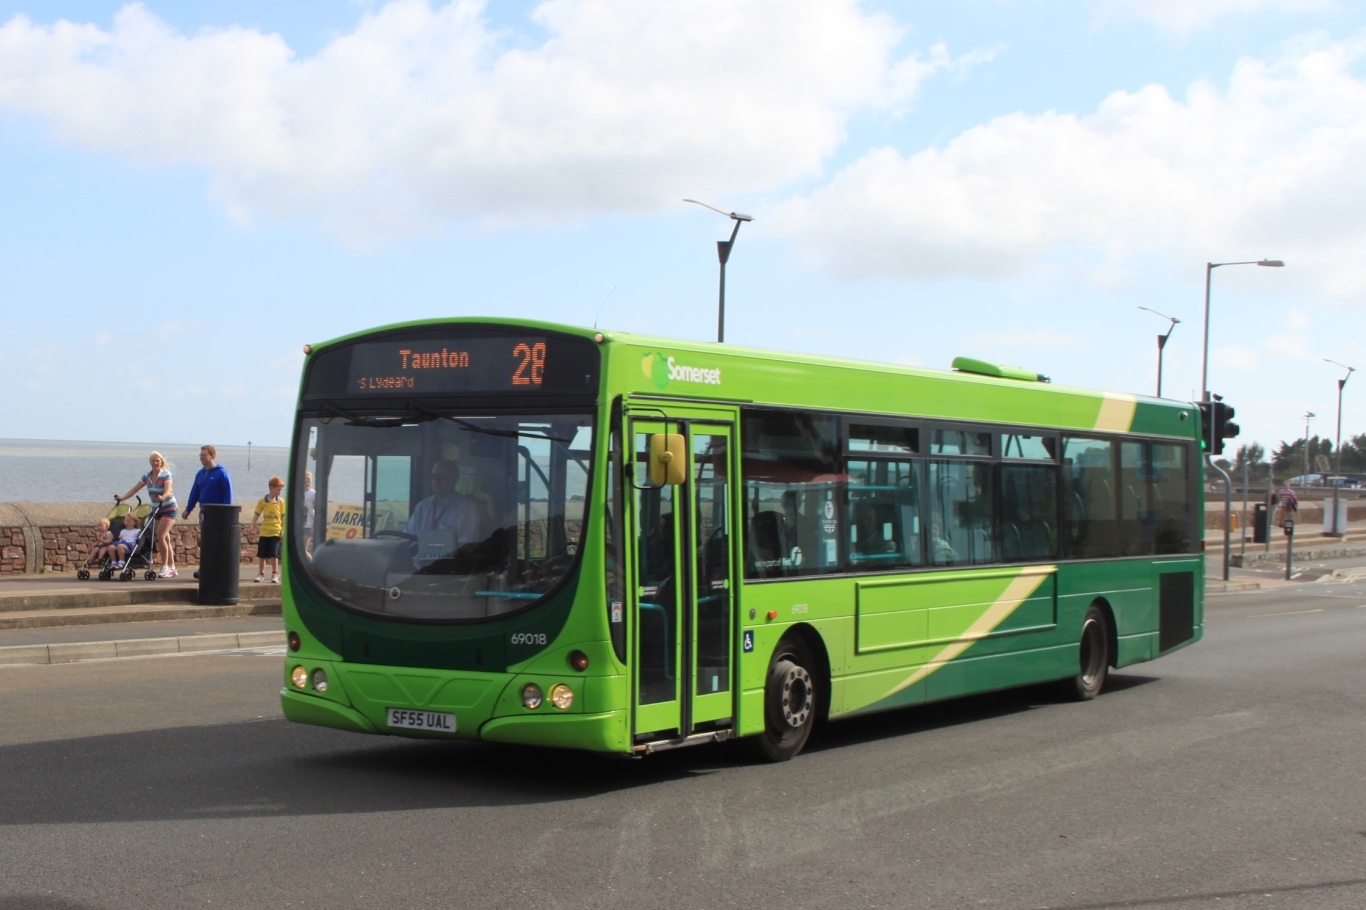 Somerset bus 28